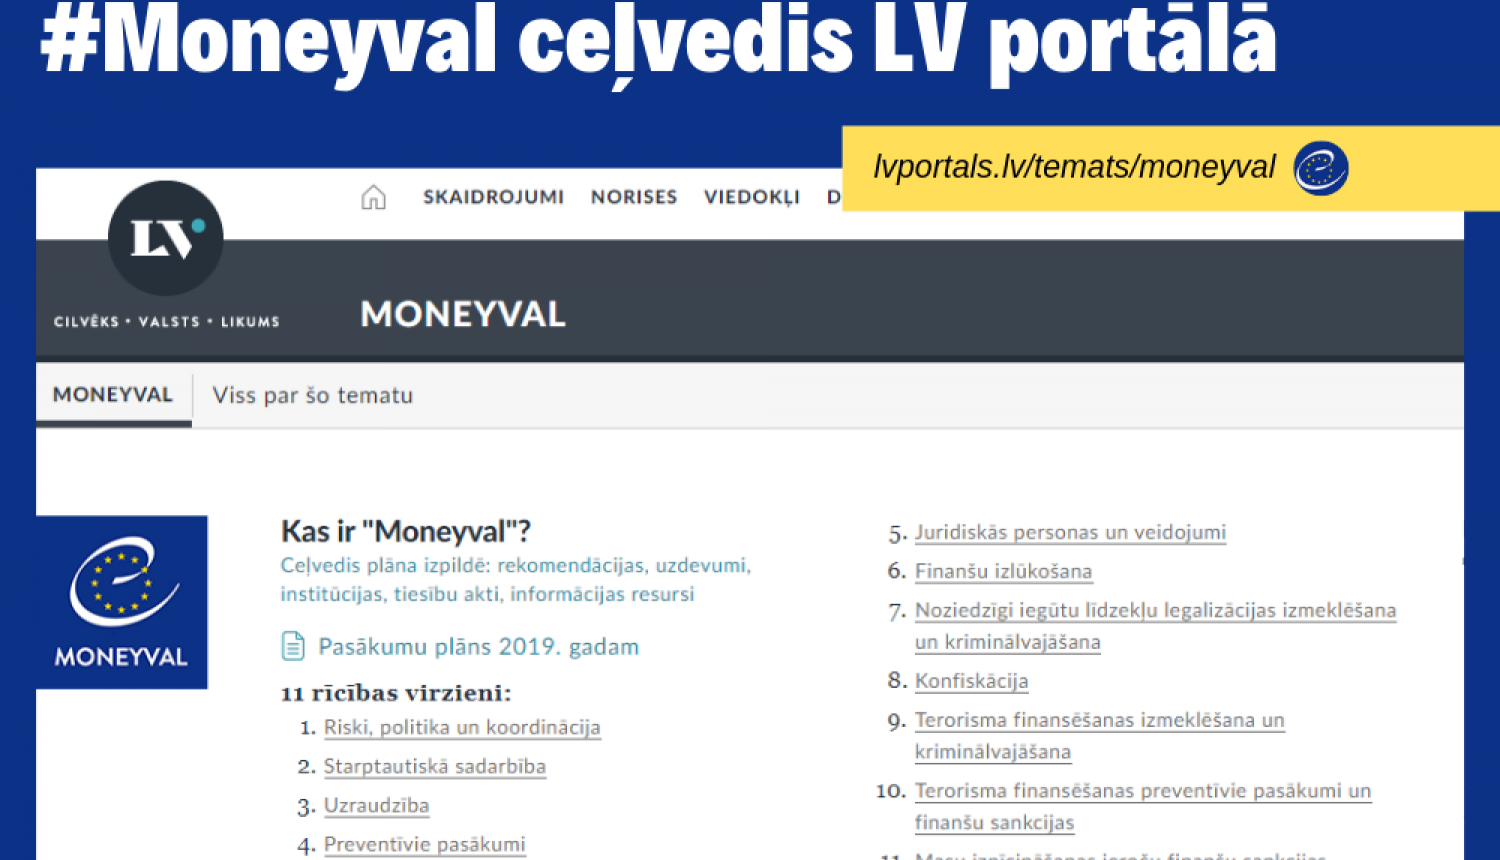 LV portāls atklāj “Moneyval” ceļvedi – turpmāk visas aktualitātes atrodamas vienkopus